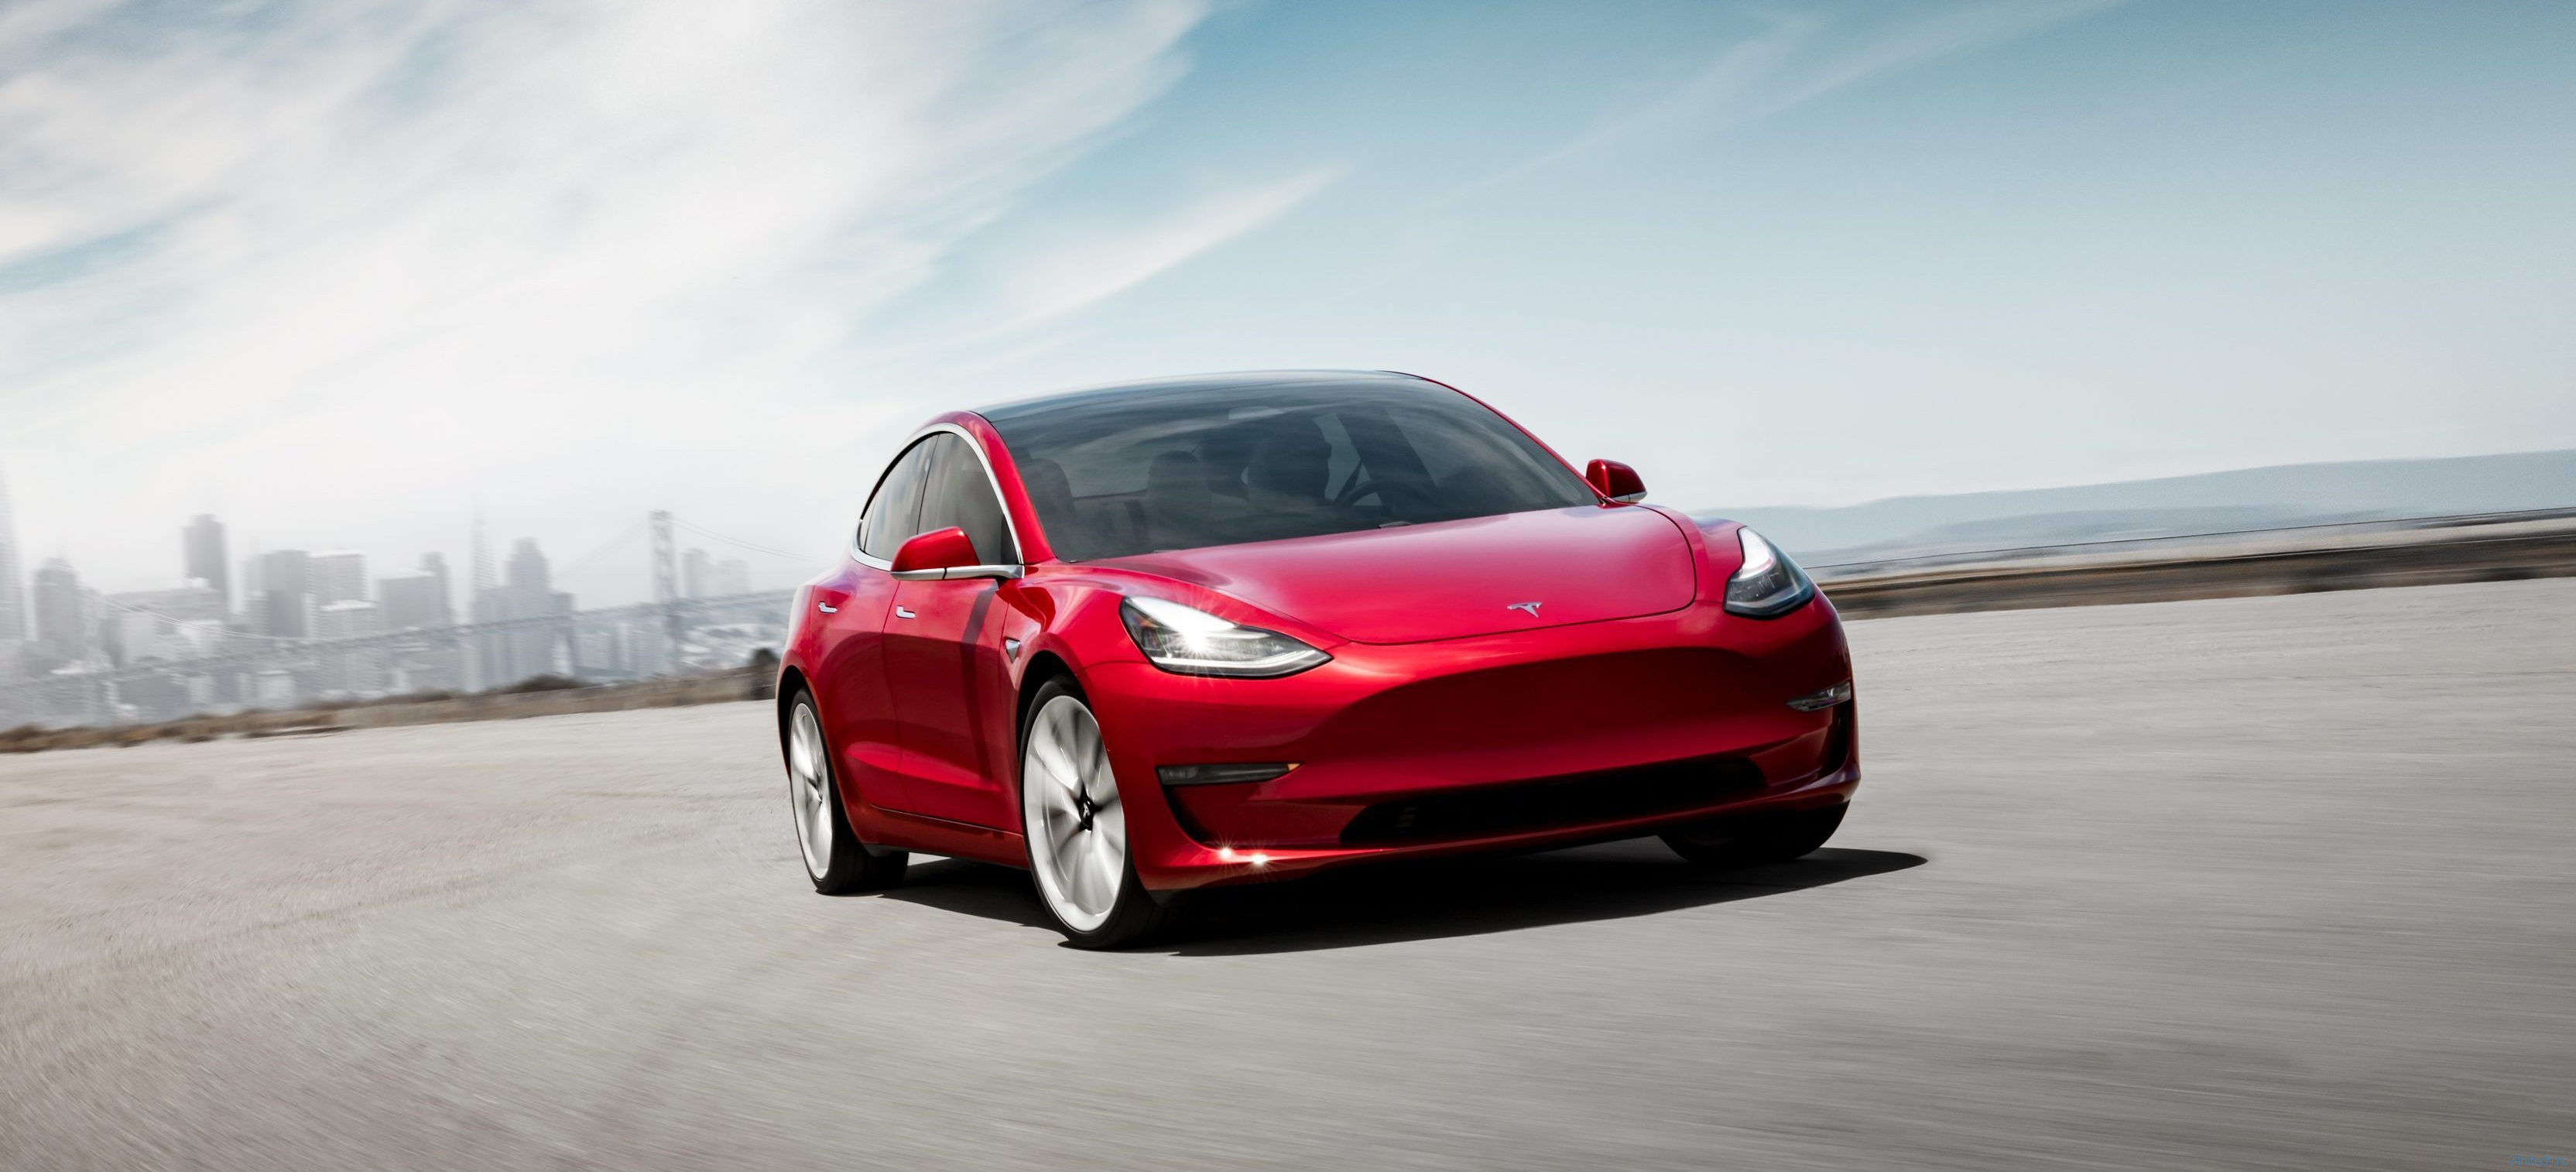 Цены на Model 3 стали еще ближе к обещанным 35 000 долларов